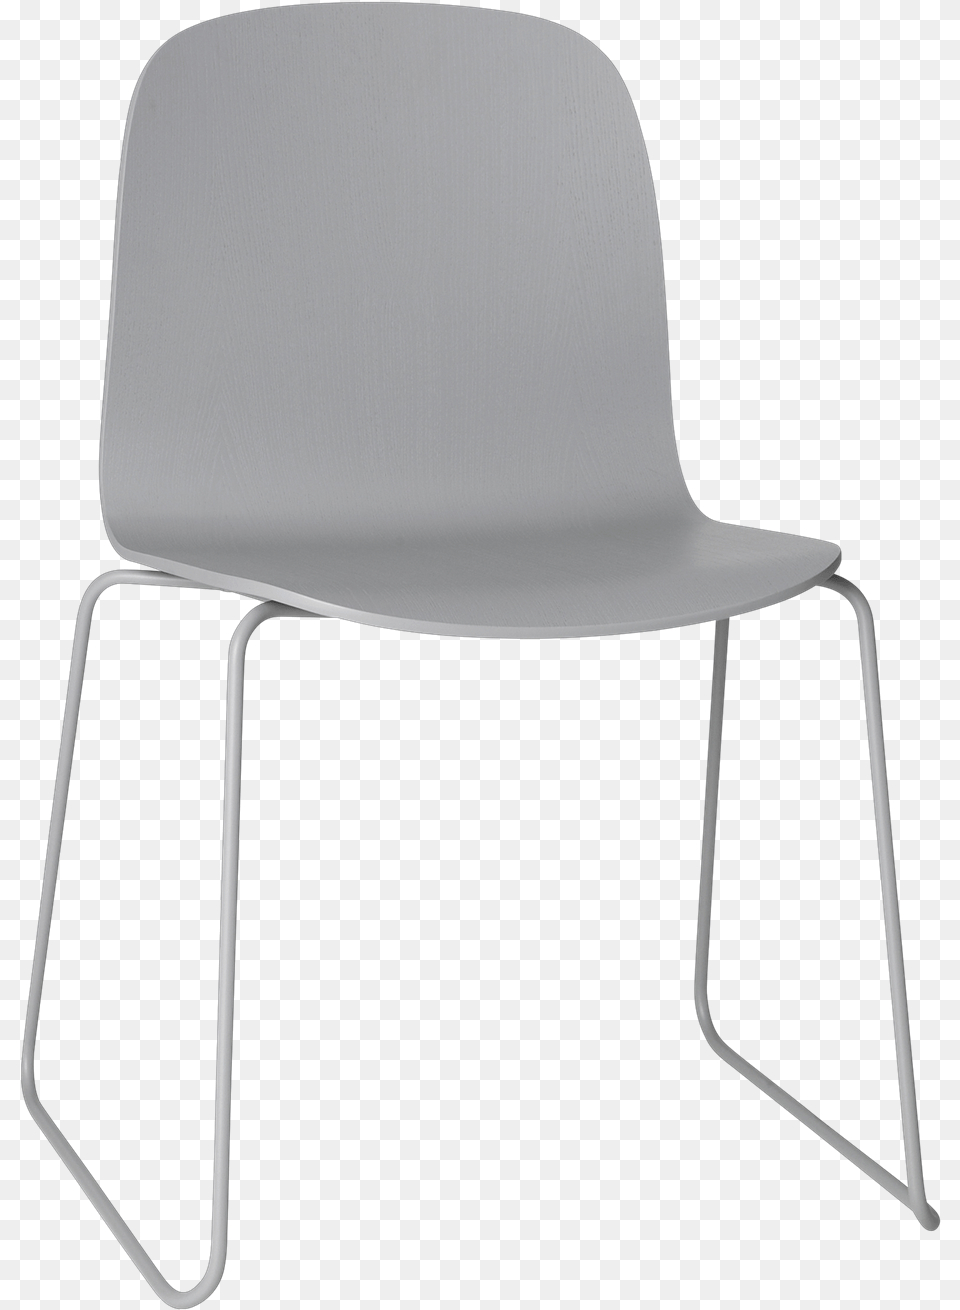 Visu Chair Sled Base Master Visu Chair Sled Base Visu Chair Sled Base, Furniture, Plywood, Wood Png Image